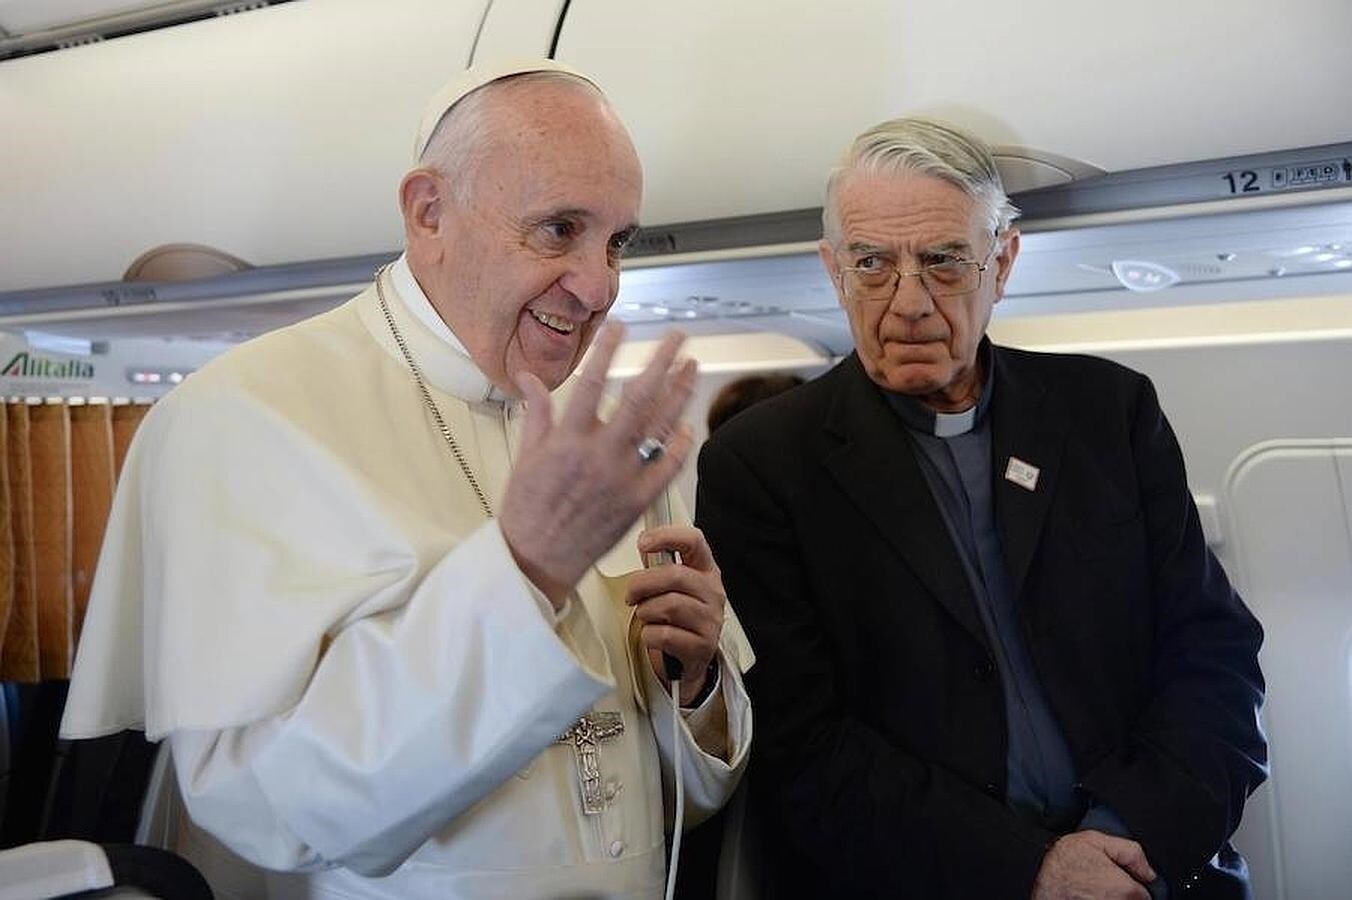 El Pontífice ha asegurado en el vuelo de ida que se trata de un viaje "triste" porque va a ver "la catástrofe humanitaria más grande desde la II Guerra Mundial"